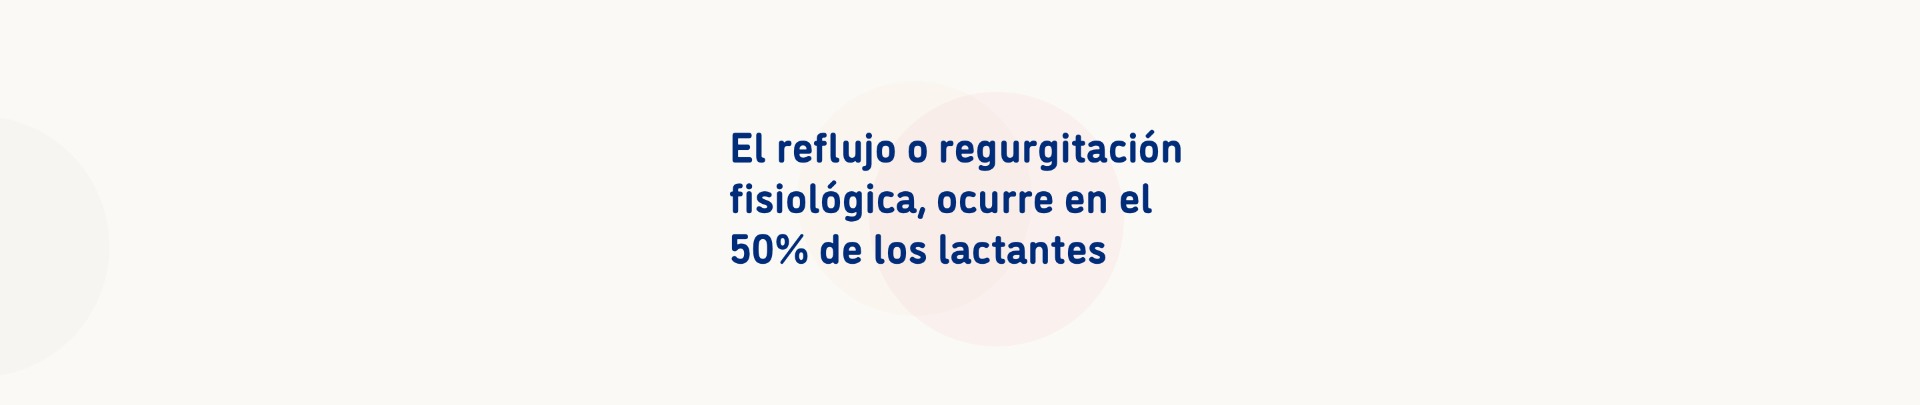 El reflujo o regurgitación fisiológica, ocurre en el 50% de los lactantes